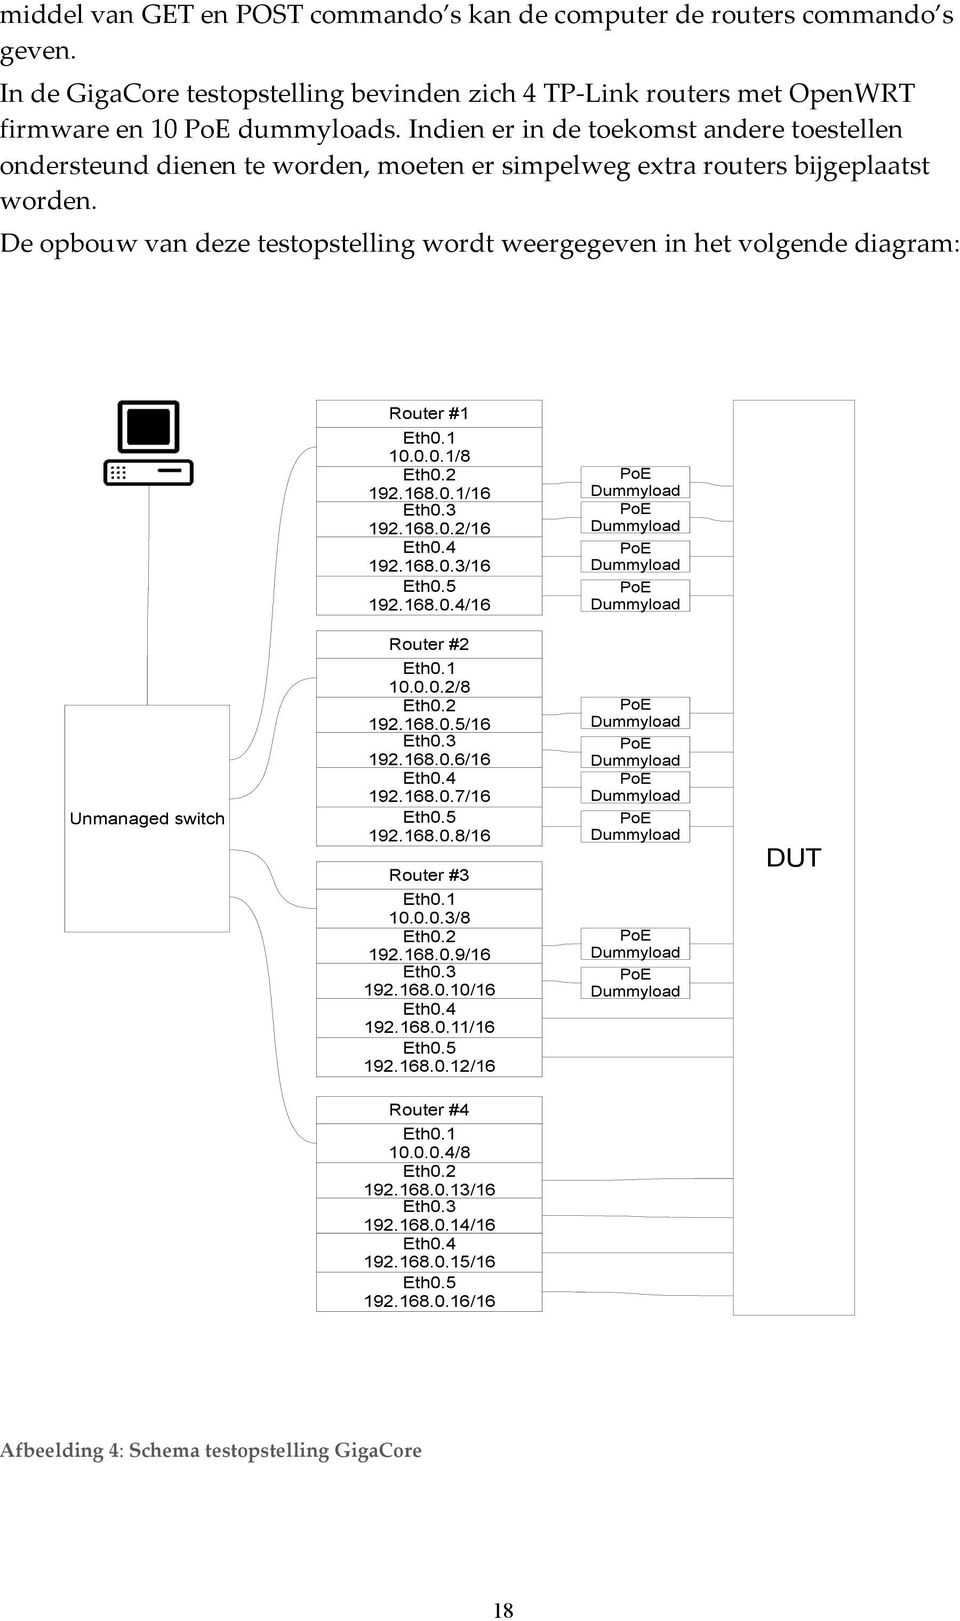 De opbouw van deze testopstelling wordt weergegeven in het volgende diagram: Router #1 Eth0.1 10.0.0.1/8 Eth0.2 192.168.0.1/16 Eth0.3 192.168.0.2/16 Eth0.4 192.168.0.3/16 Eth0.5 192.168.0.4/16 PoE Dummyload PoE Dummyload PoE Dummyload PoE Dummyload Unmanaged switch Router #2 Eth0.